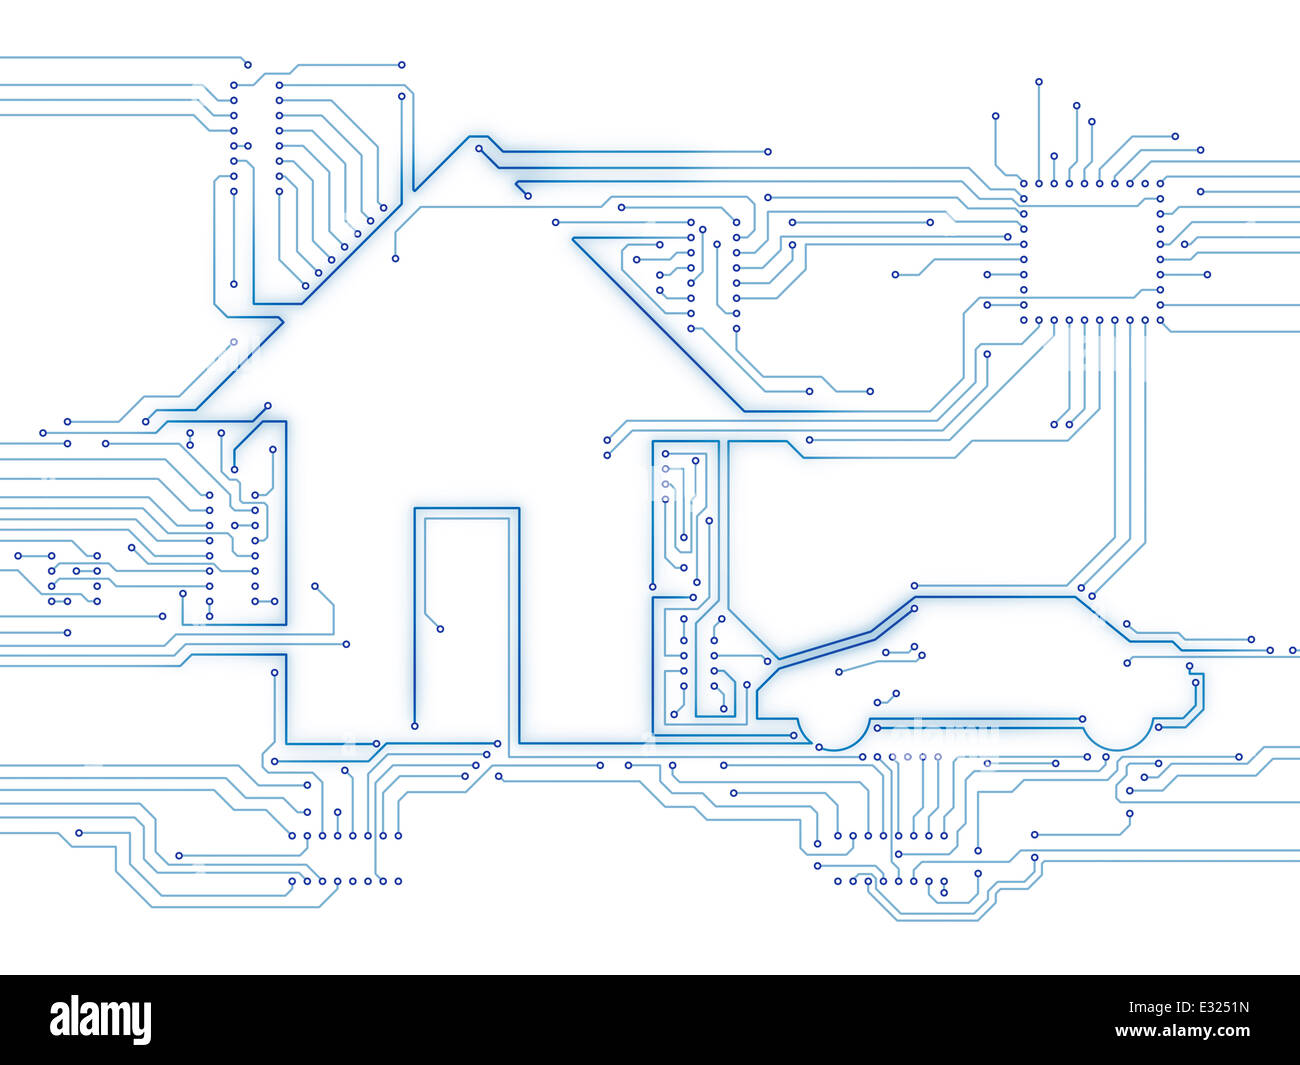 Connecté Maison et voiture électrique domotique avenir technologie ménage illustration conceptuelle isolated on white Banque D'Images